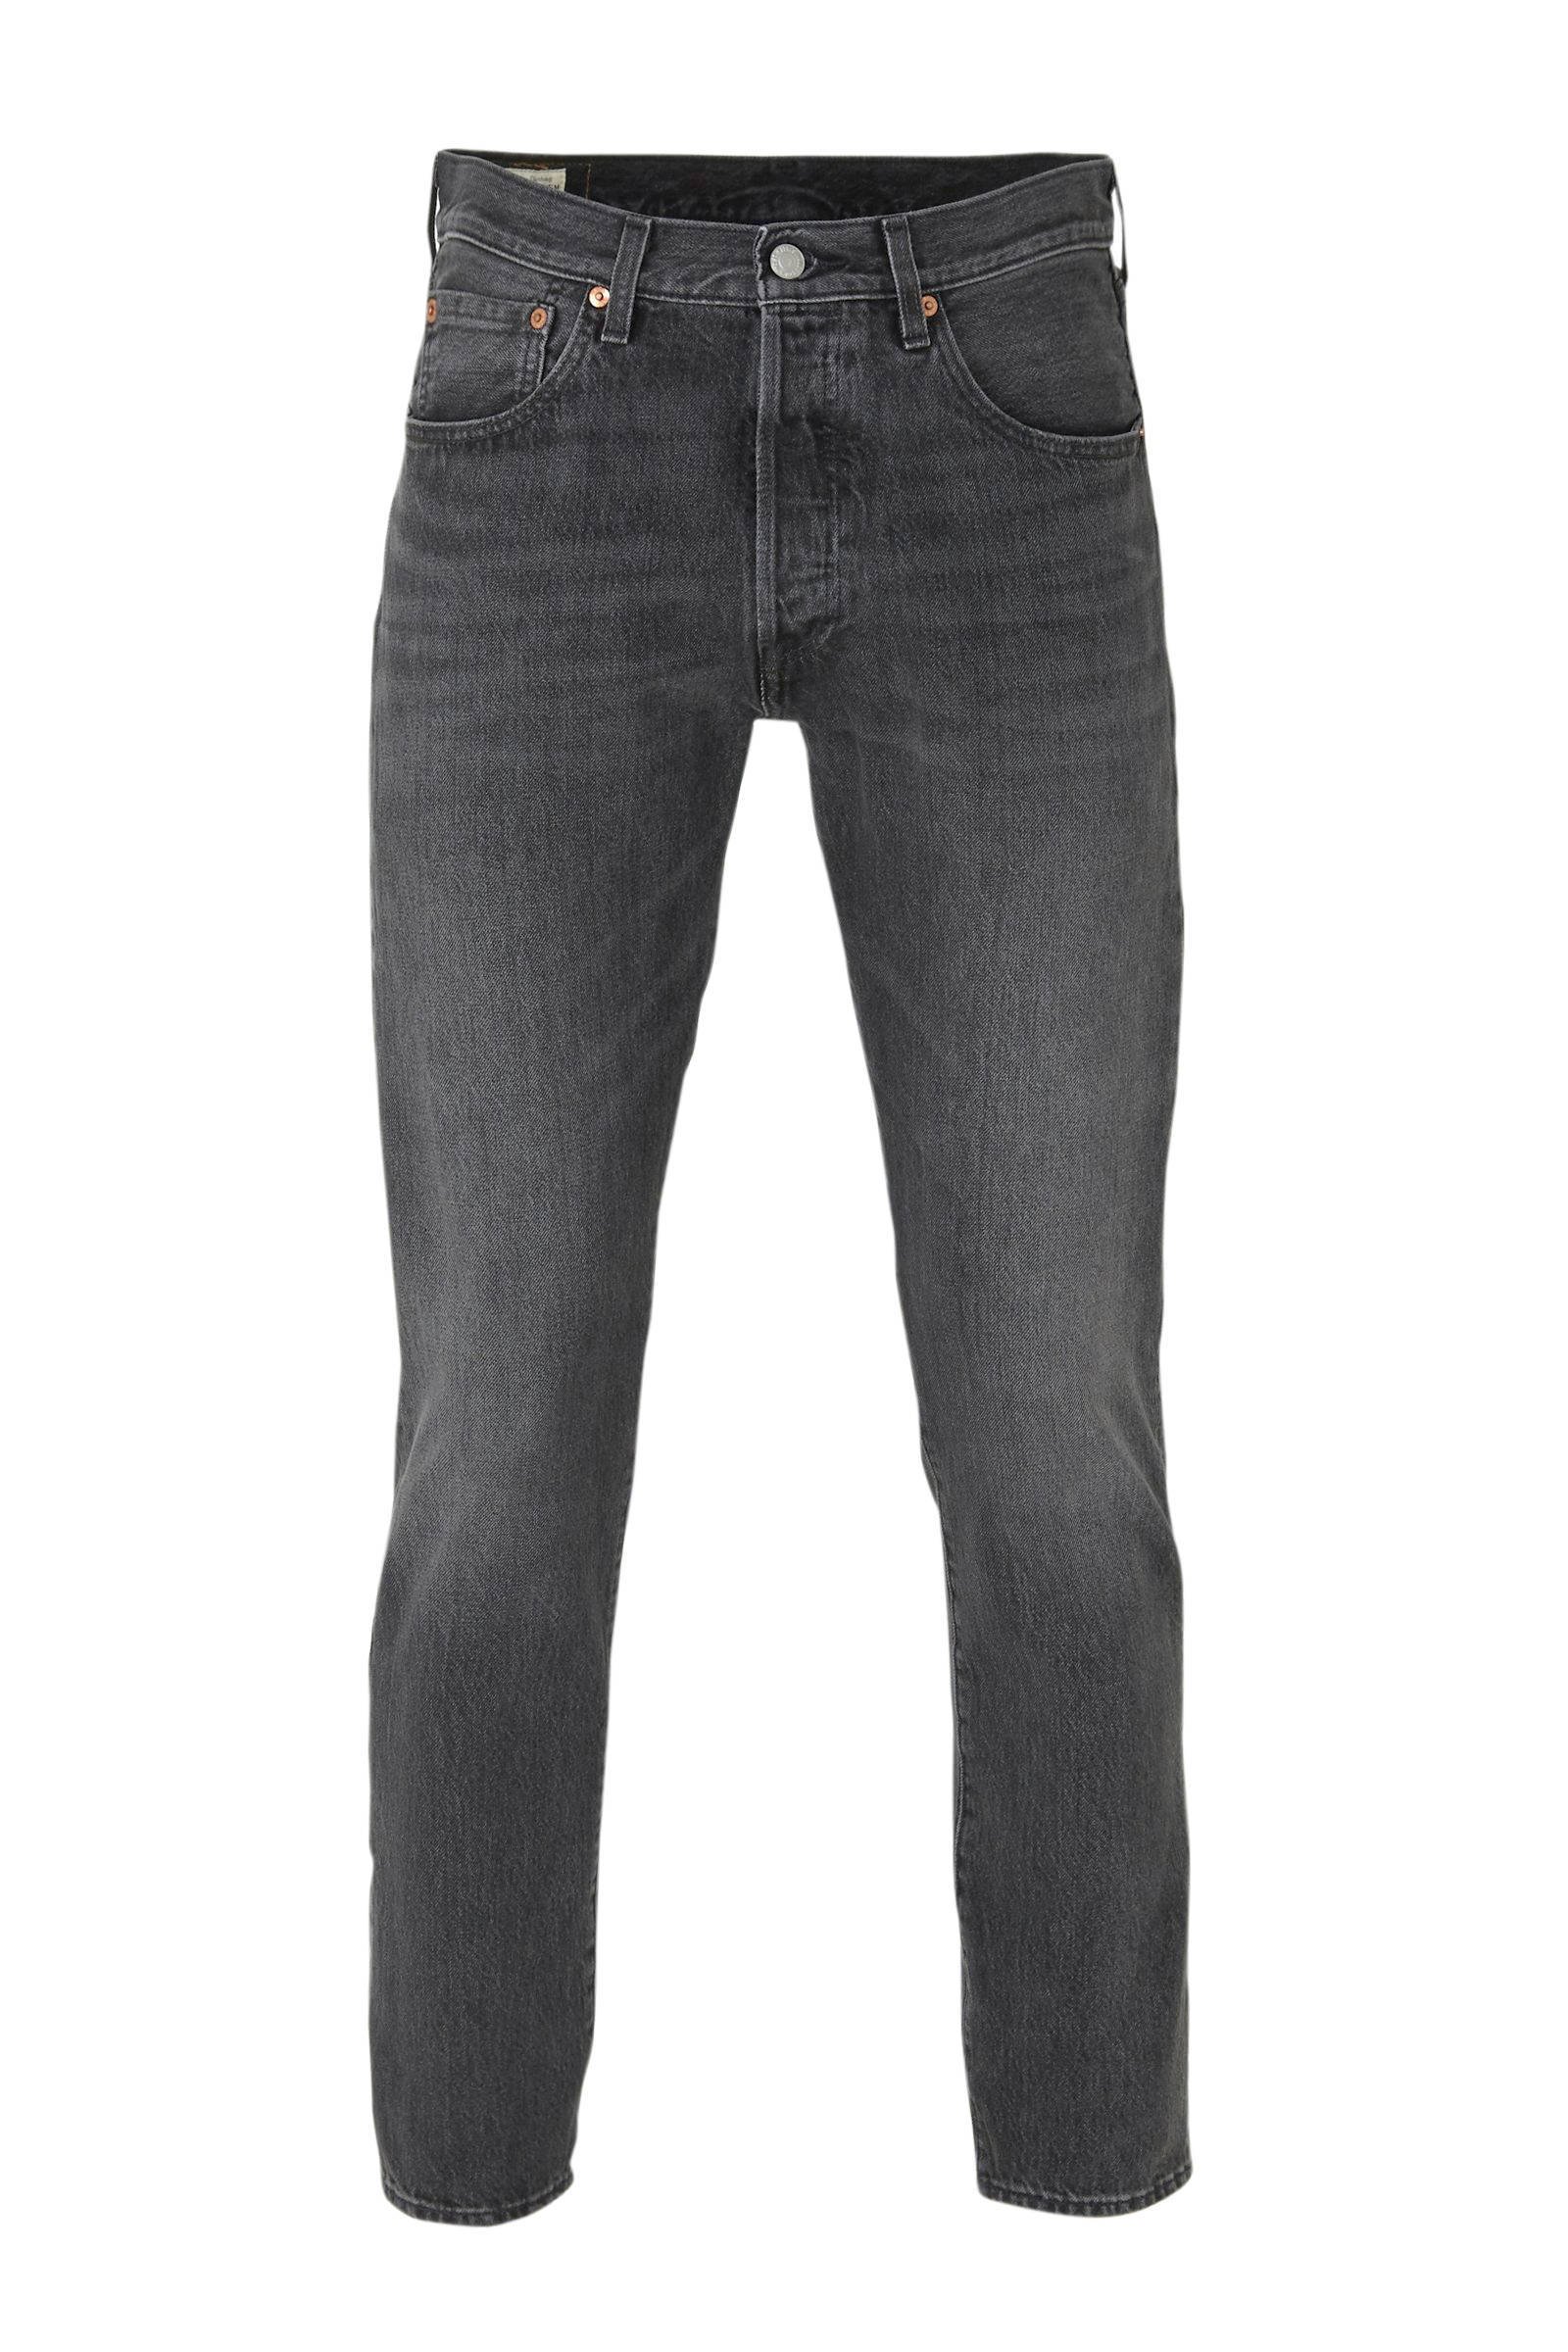 grey levis jeans